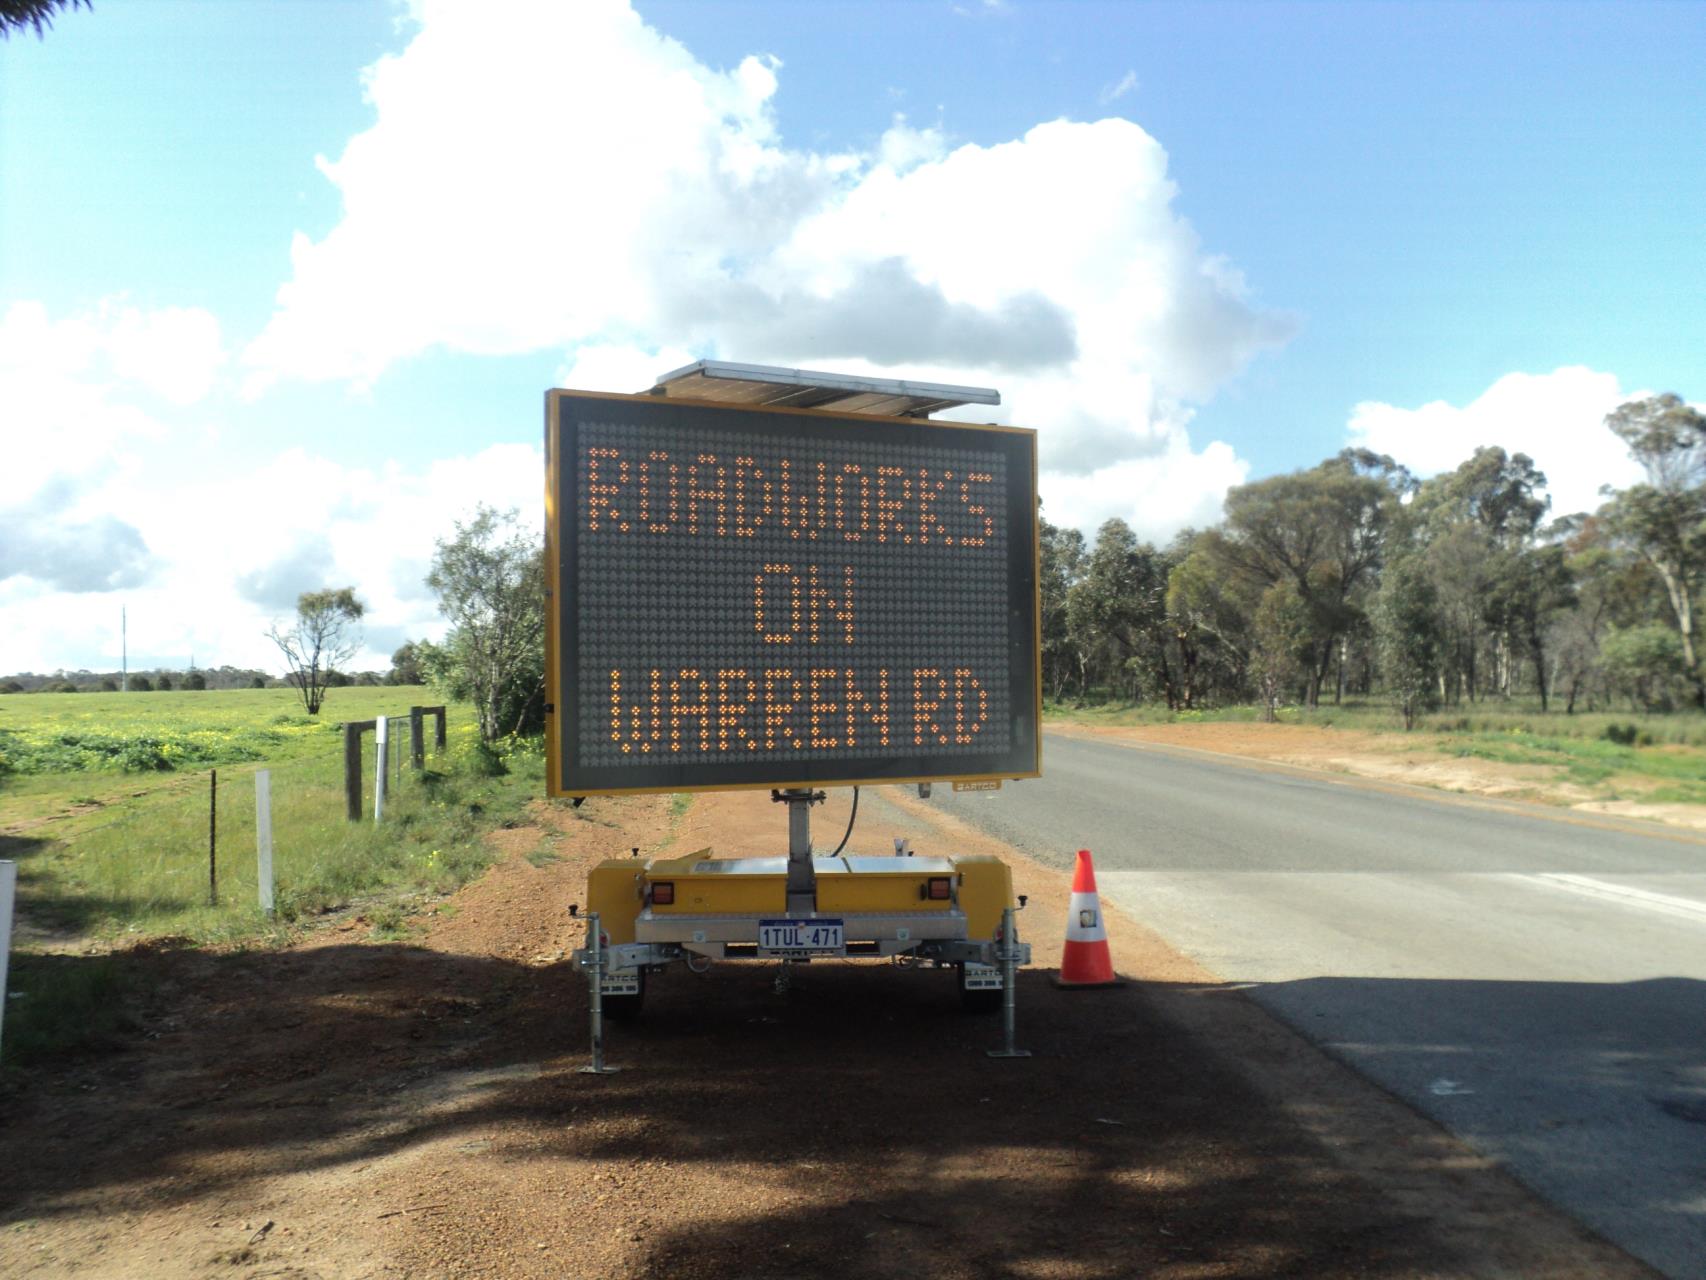 Warren Road Roadworks – Follow The Signs